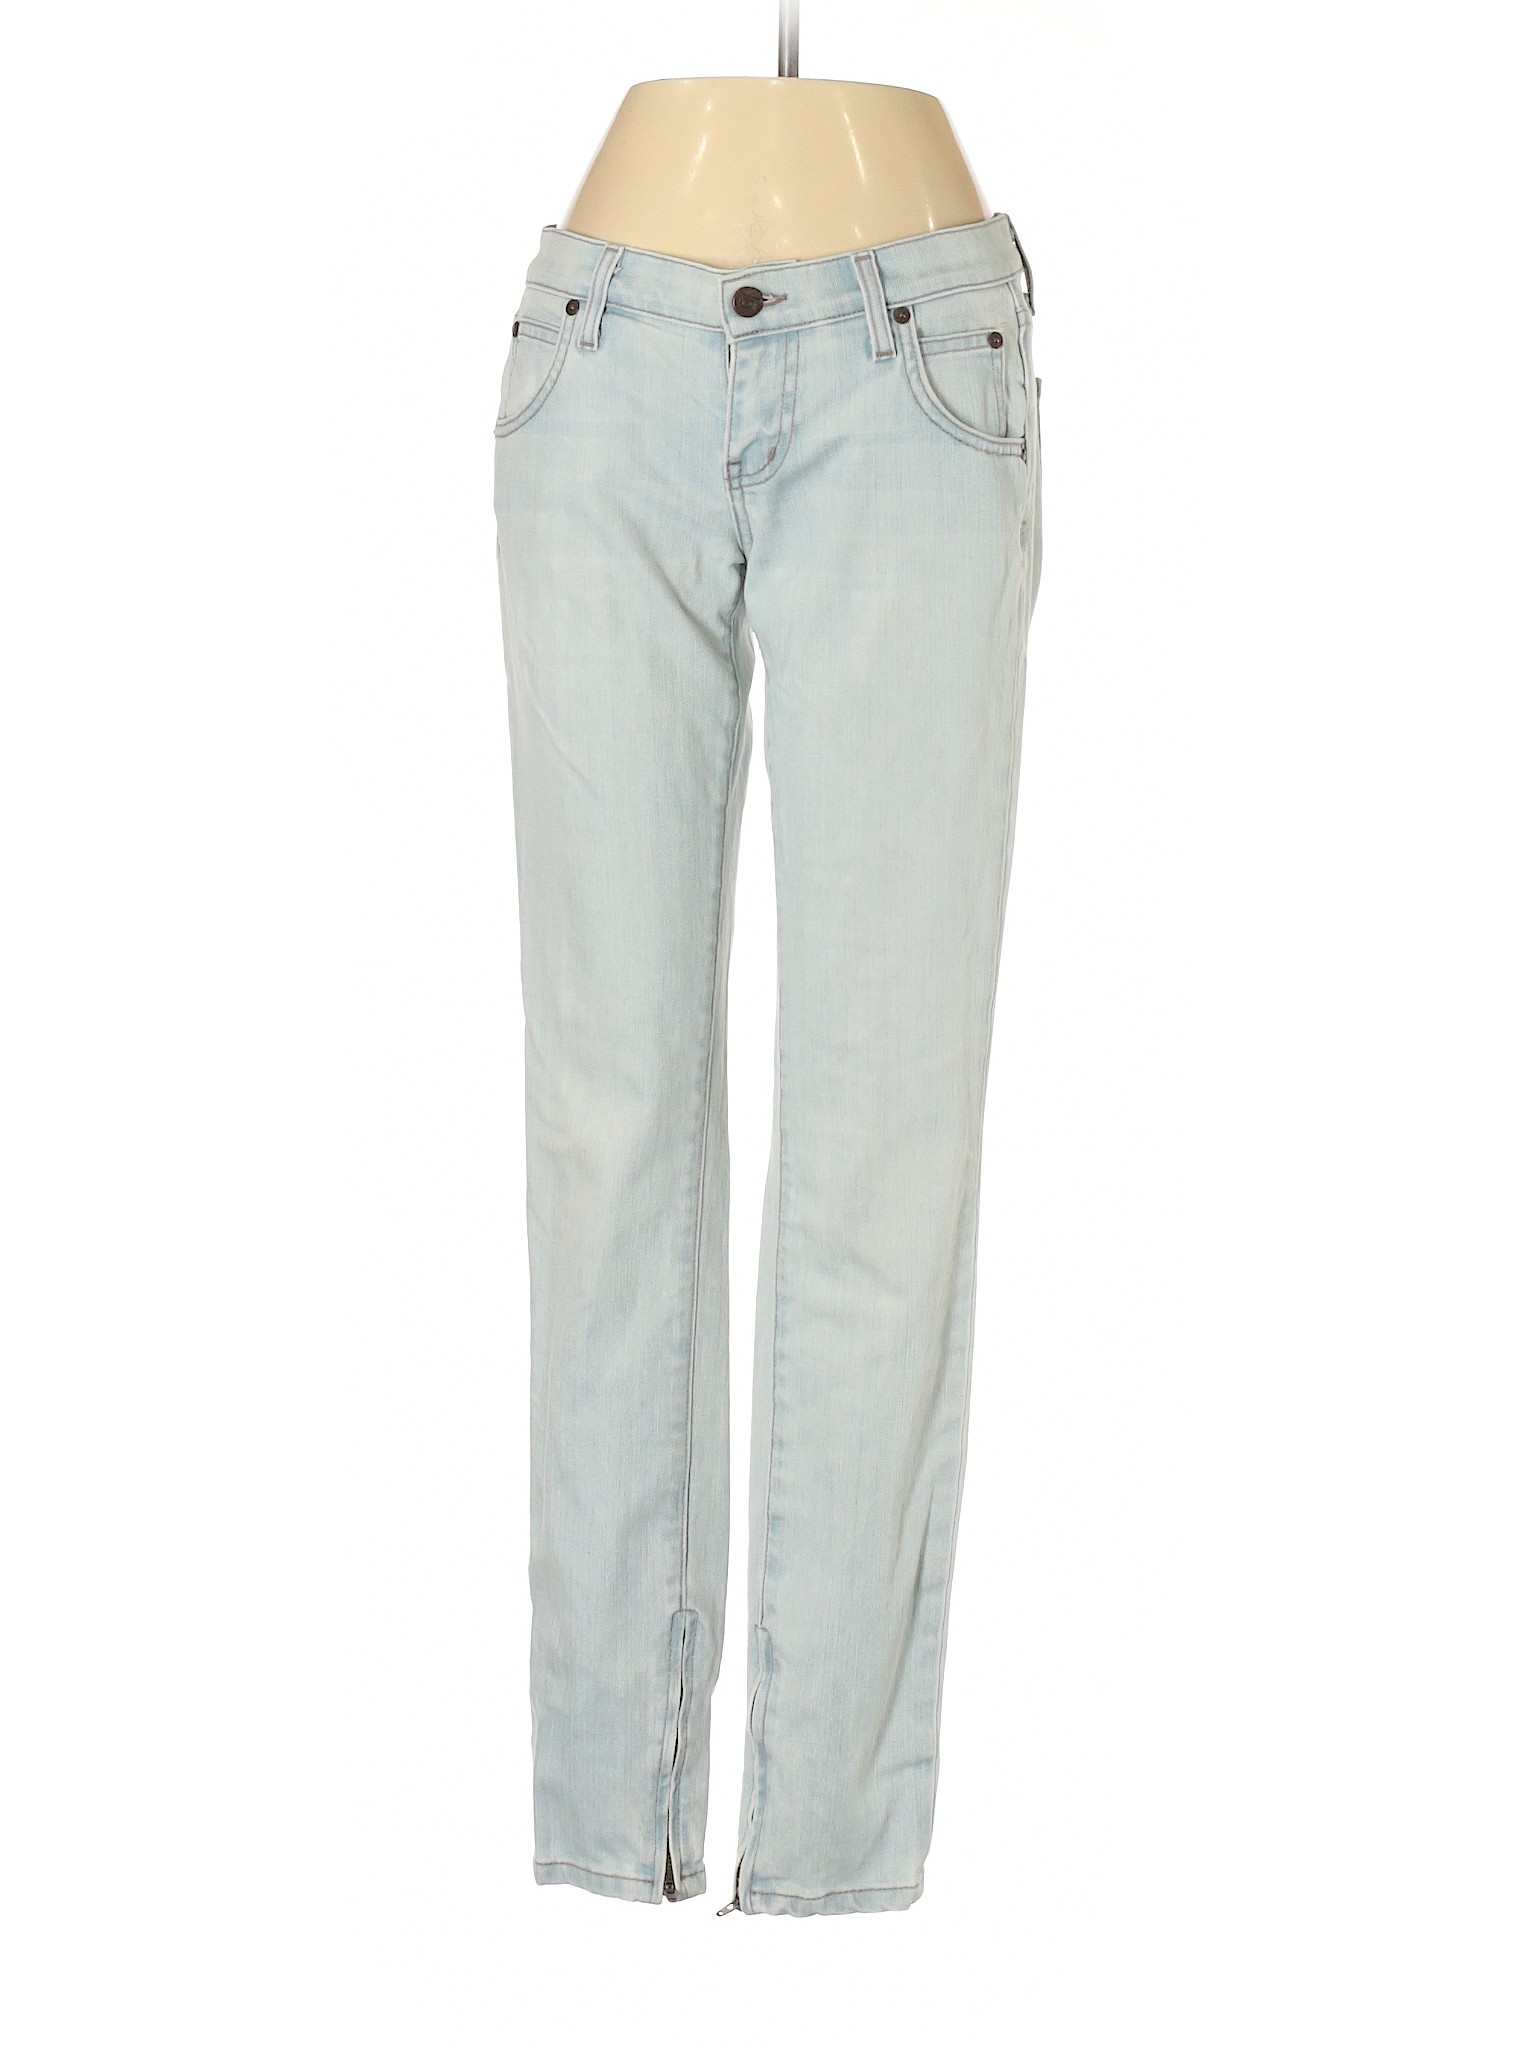 Kova & T Women Blue Jeans 25W | eBay